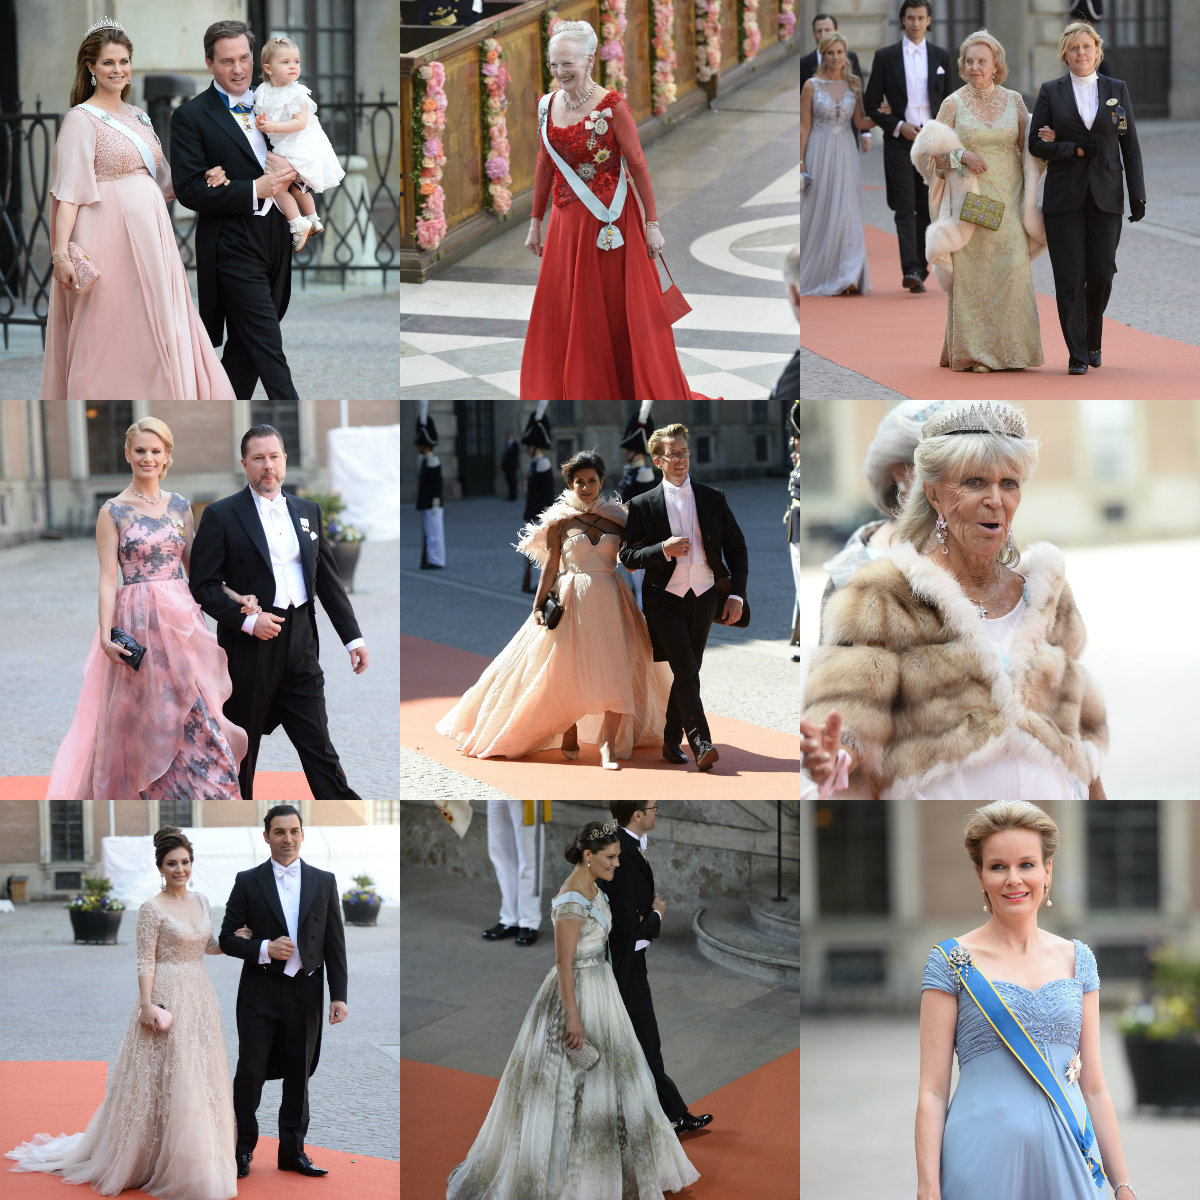 Kungliga bröllop, Prinsbröllopet 2015, Prins Carl Philip, Klänningar, Prinsessan Sofia